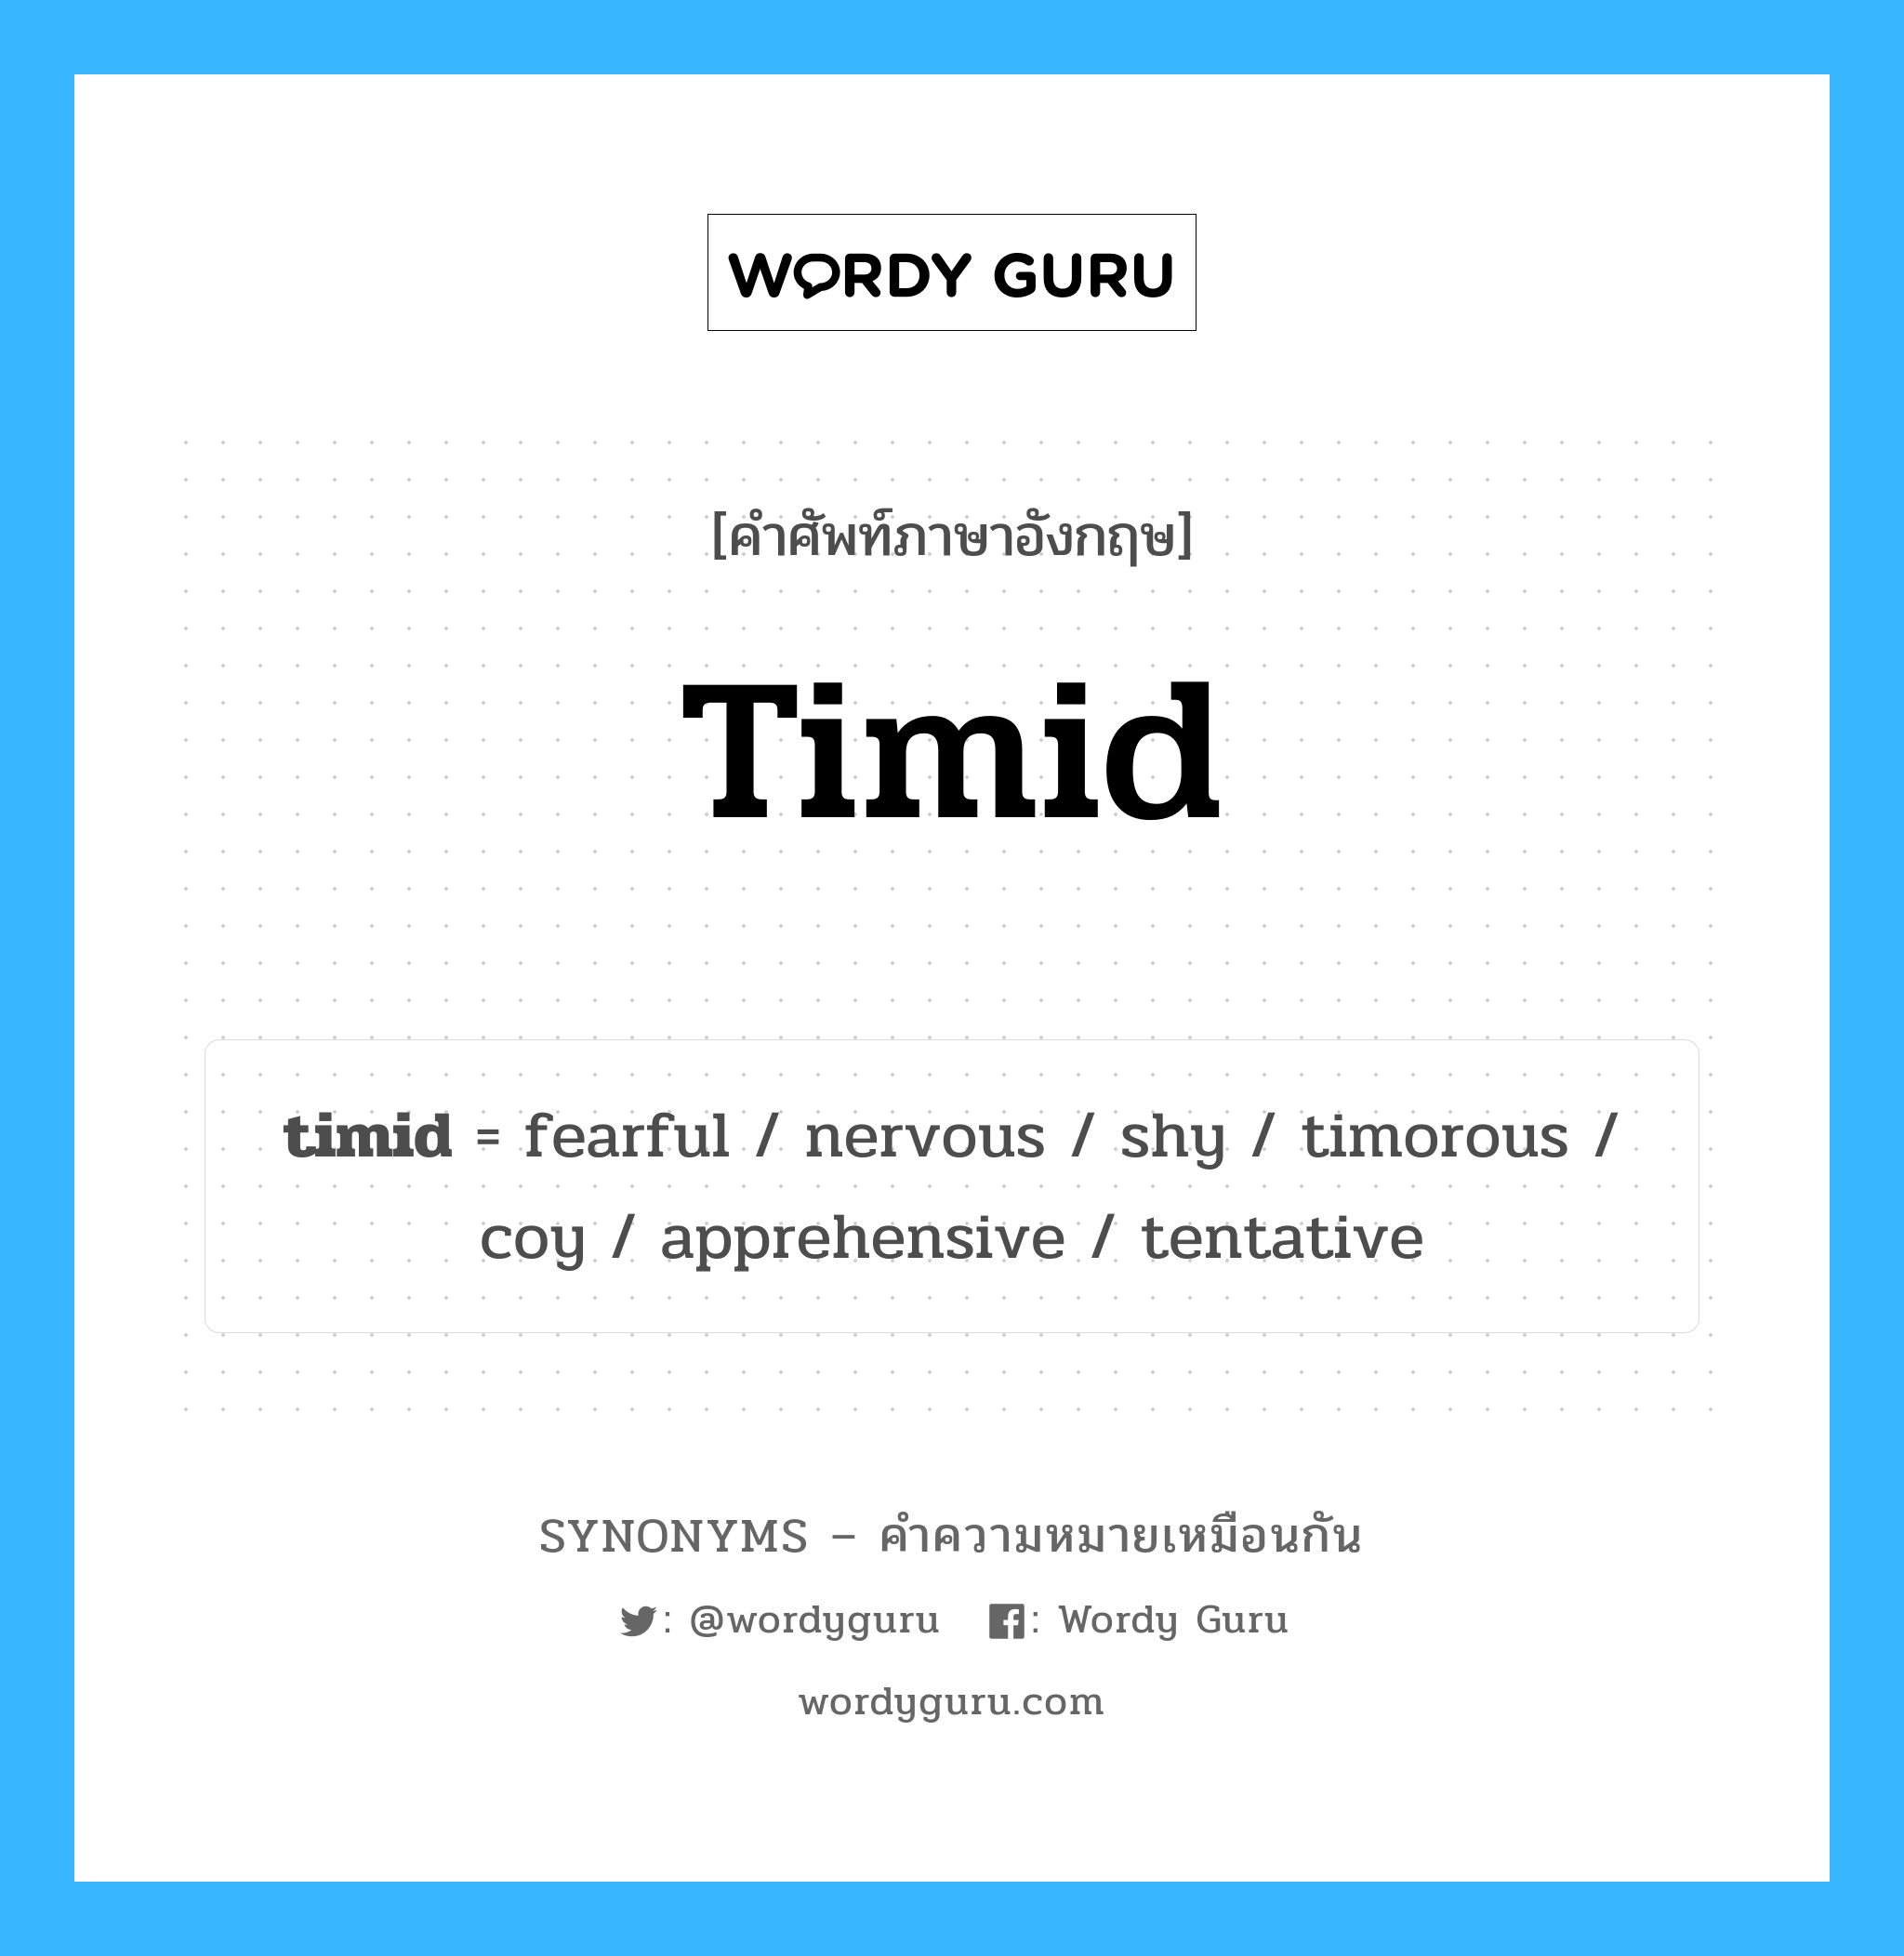 fearful เป็นหนึ่งใน timid และมีคำอื่น ๆ อีกดังนี้, คำศัพท์ภาษาอังกฤษ fearful ความหมายคล้ายกันกับ timid แปลว่า น่ากลัว หมวด timid